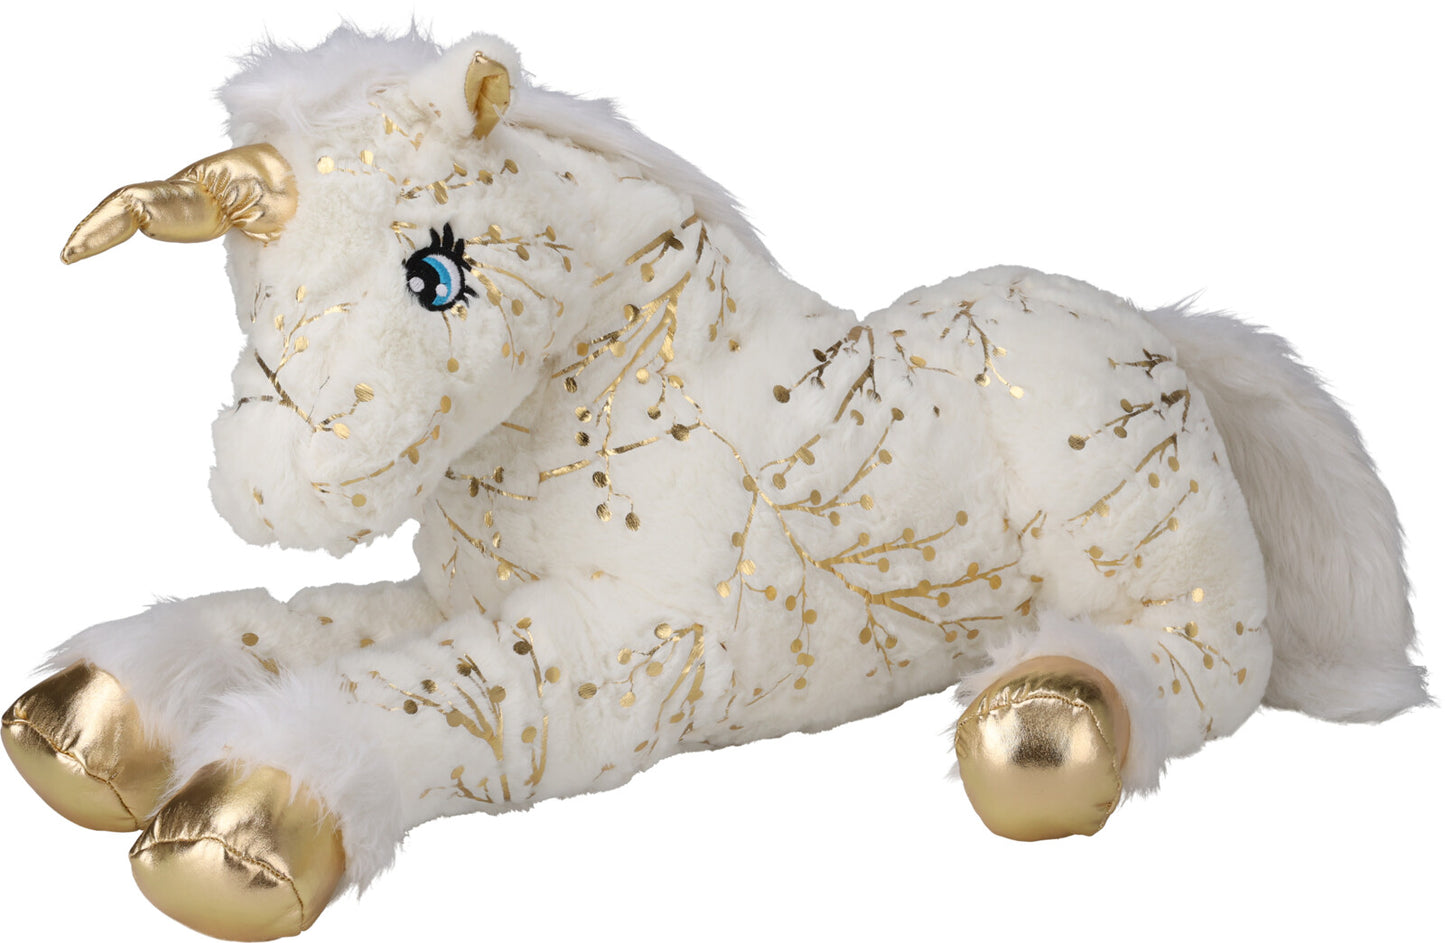 Mdm Plush Unicorn with Gold detailing